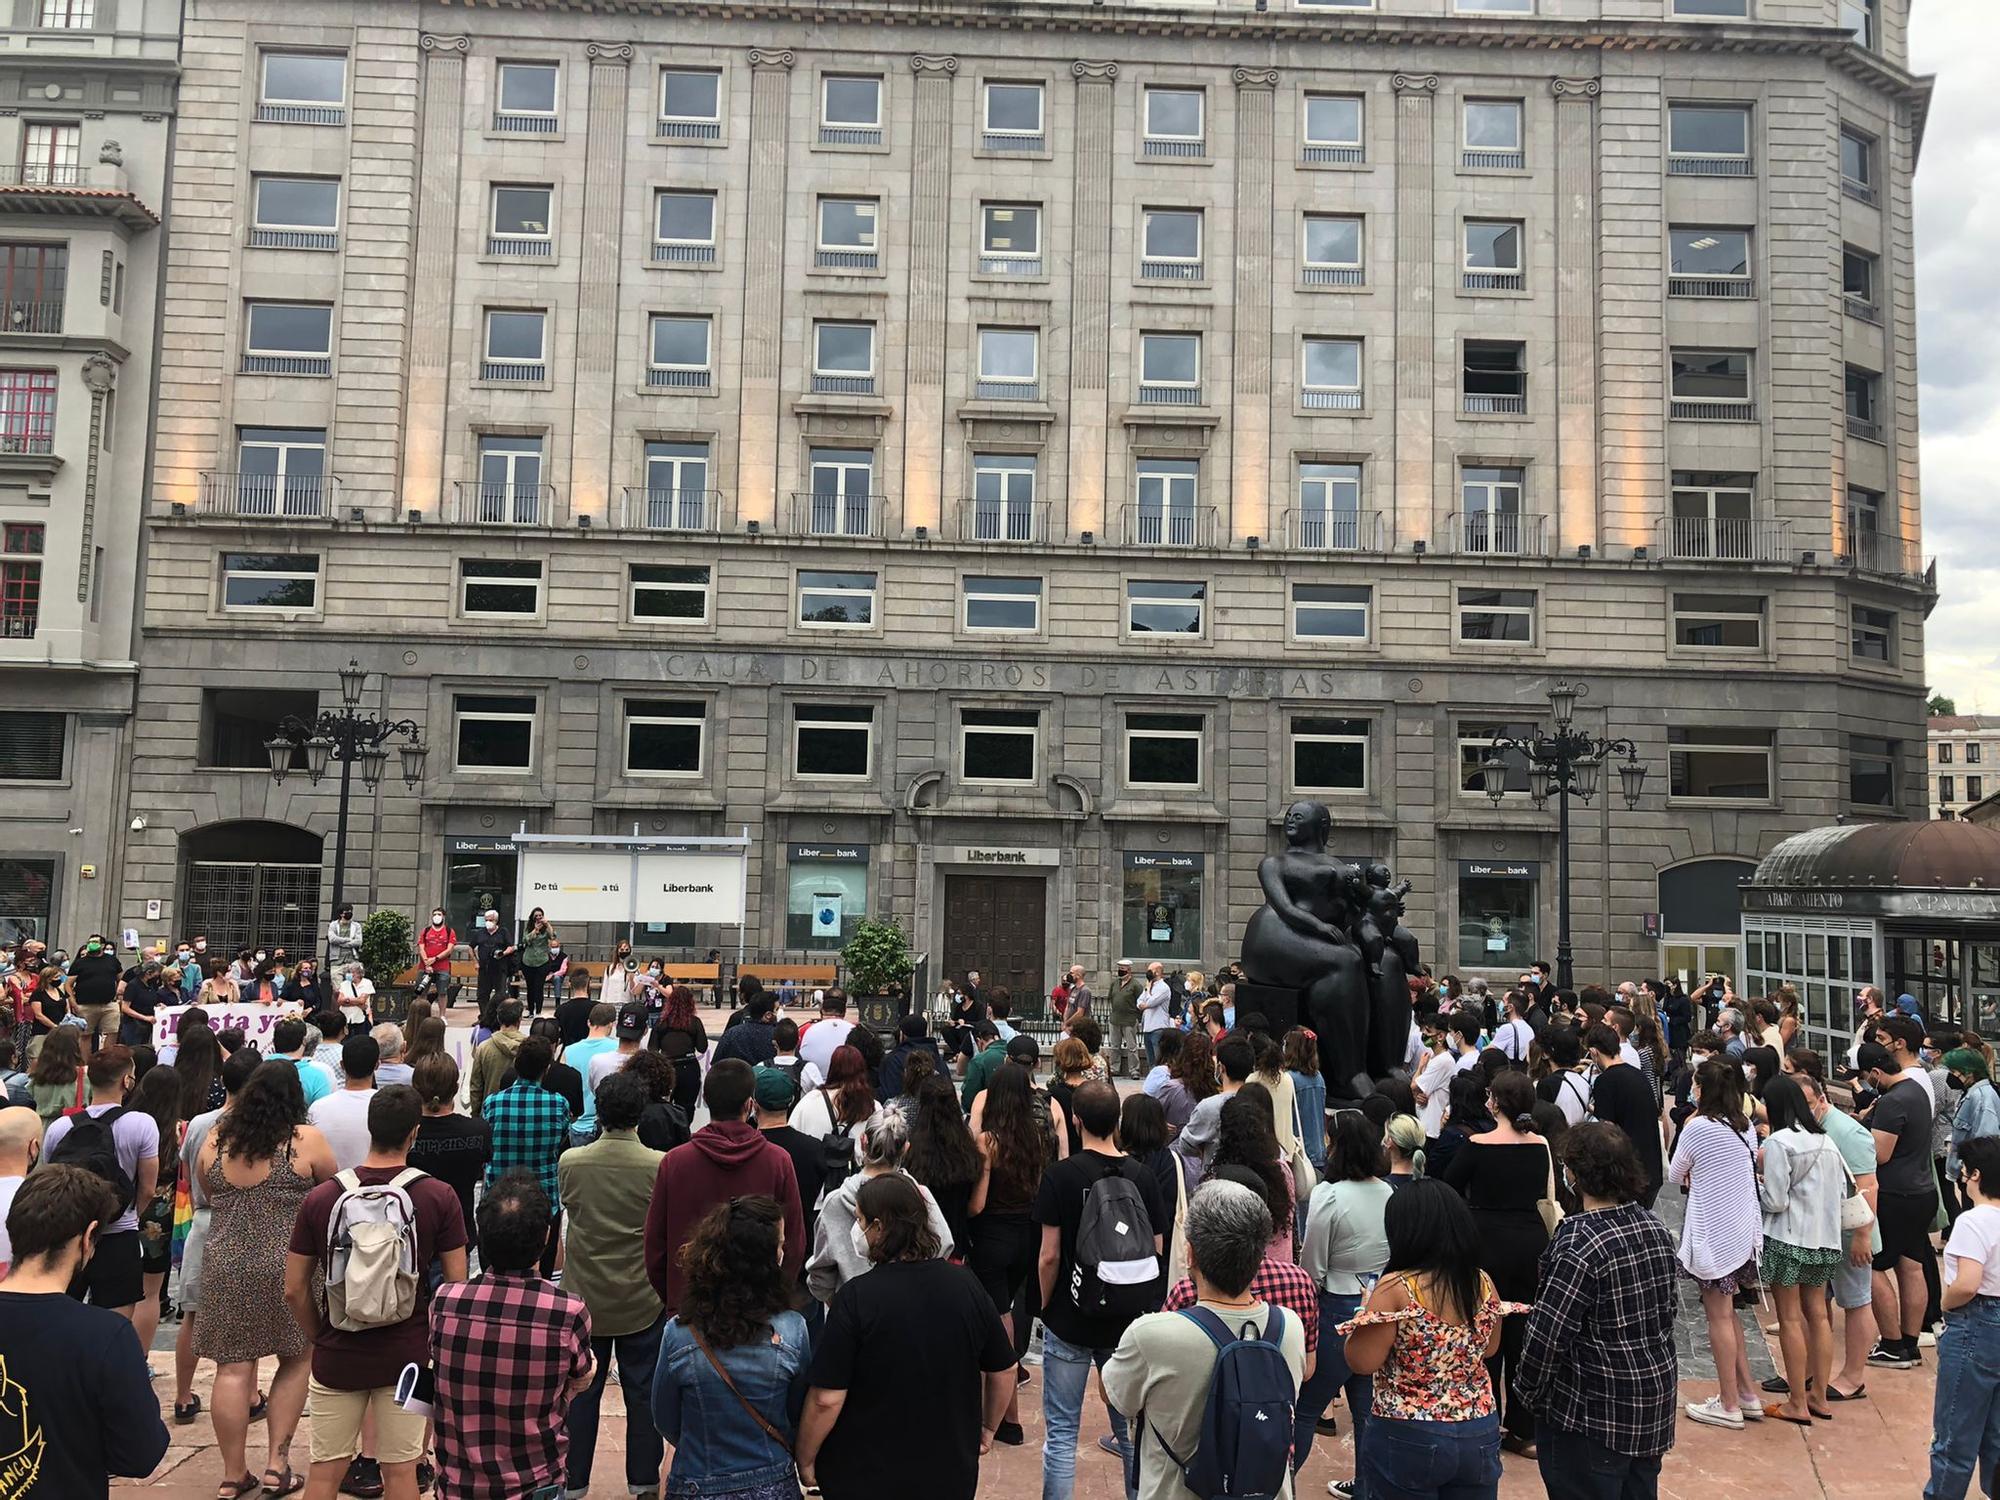 Oviedo y Gijón salen a la calle para pedir justicia por el asesinato de Samuel: "Ni una agresión sin respuesta"